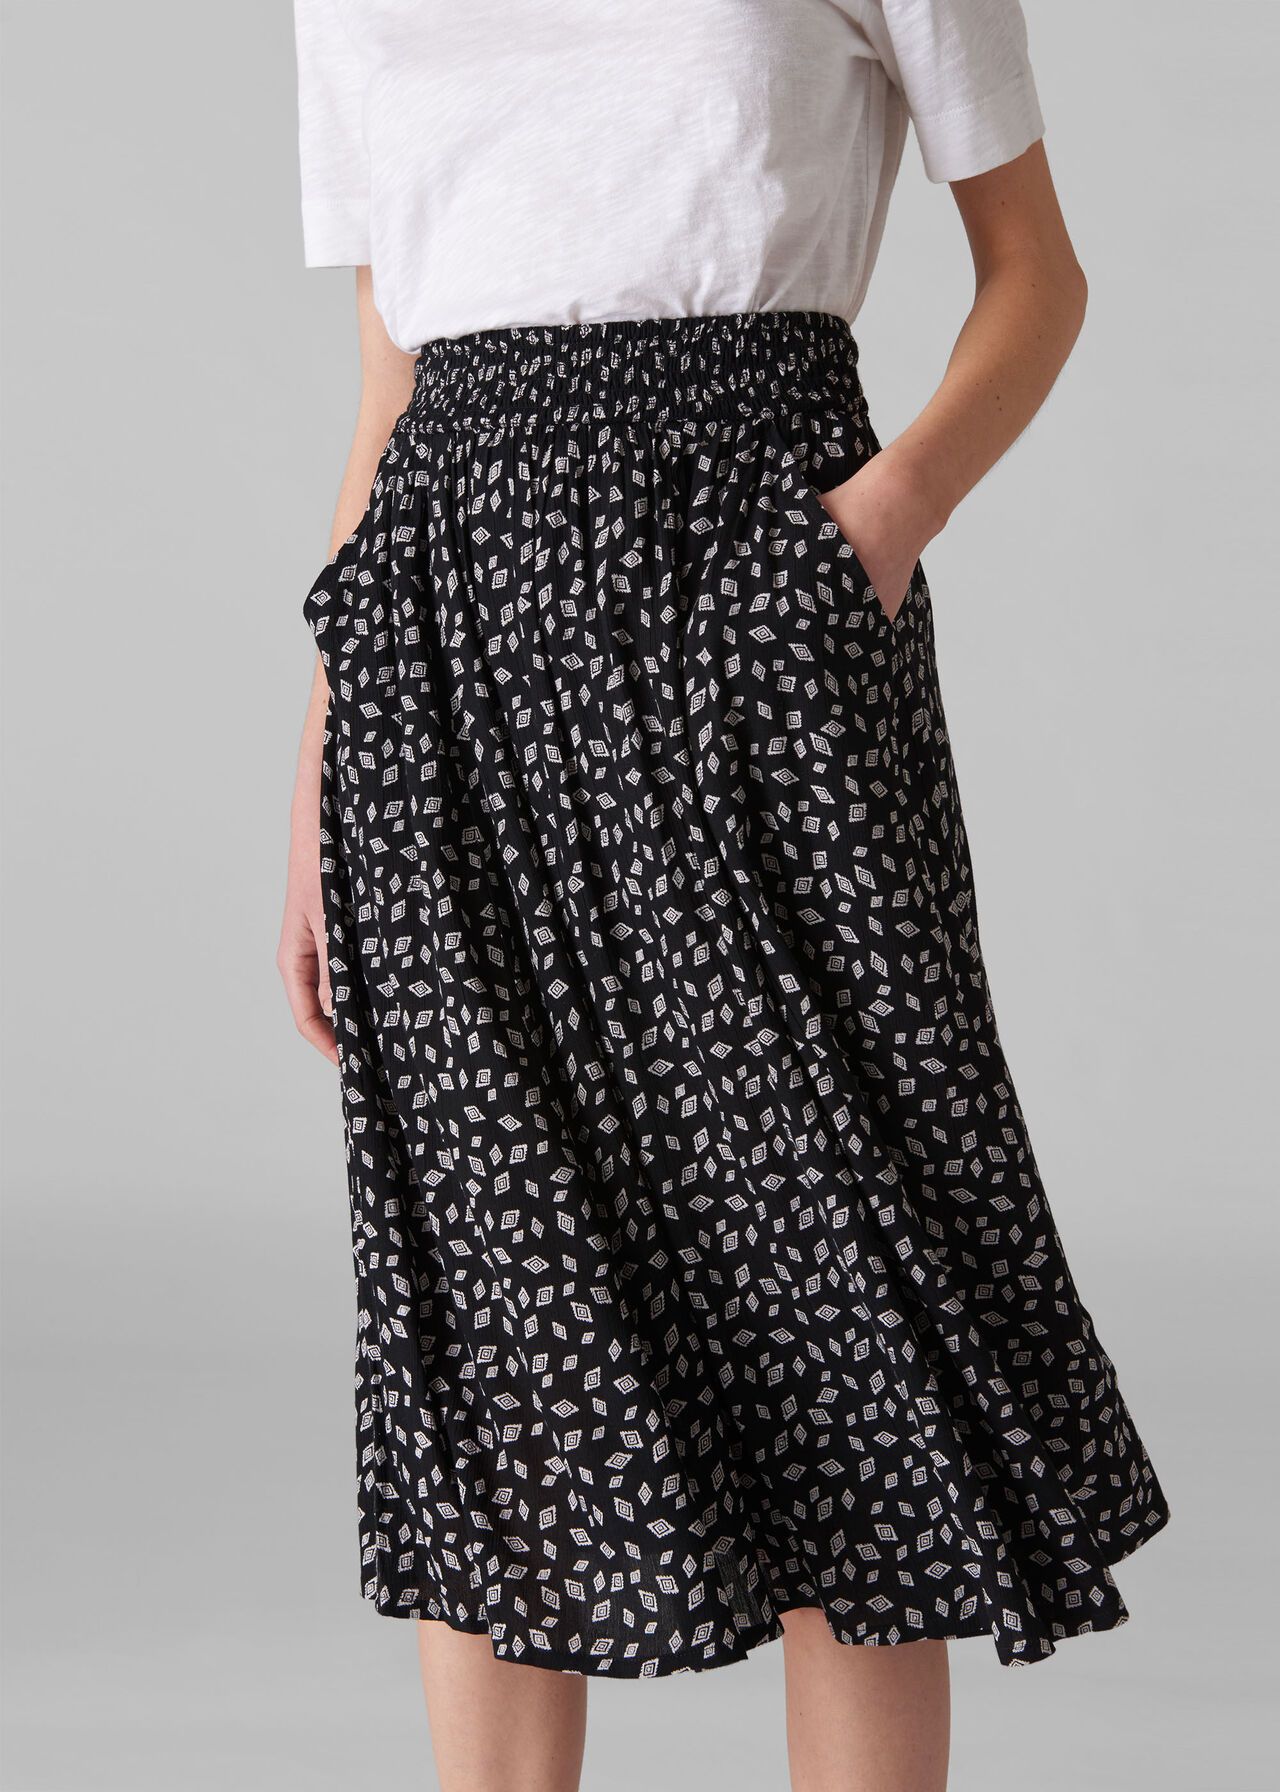 Gobi Print Textured Skirt Black and White